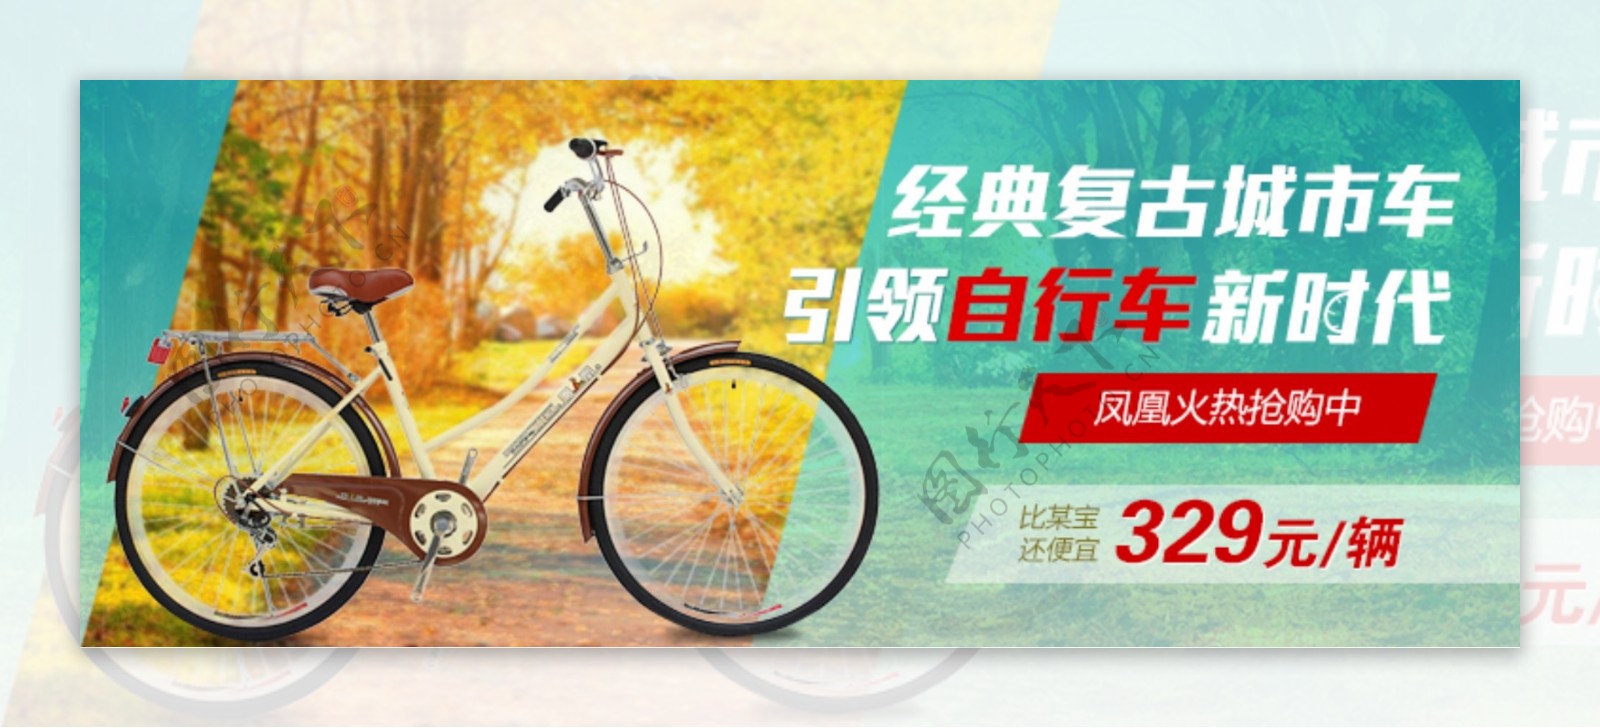 自行车广告宣传图